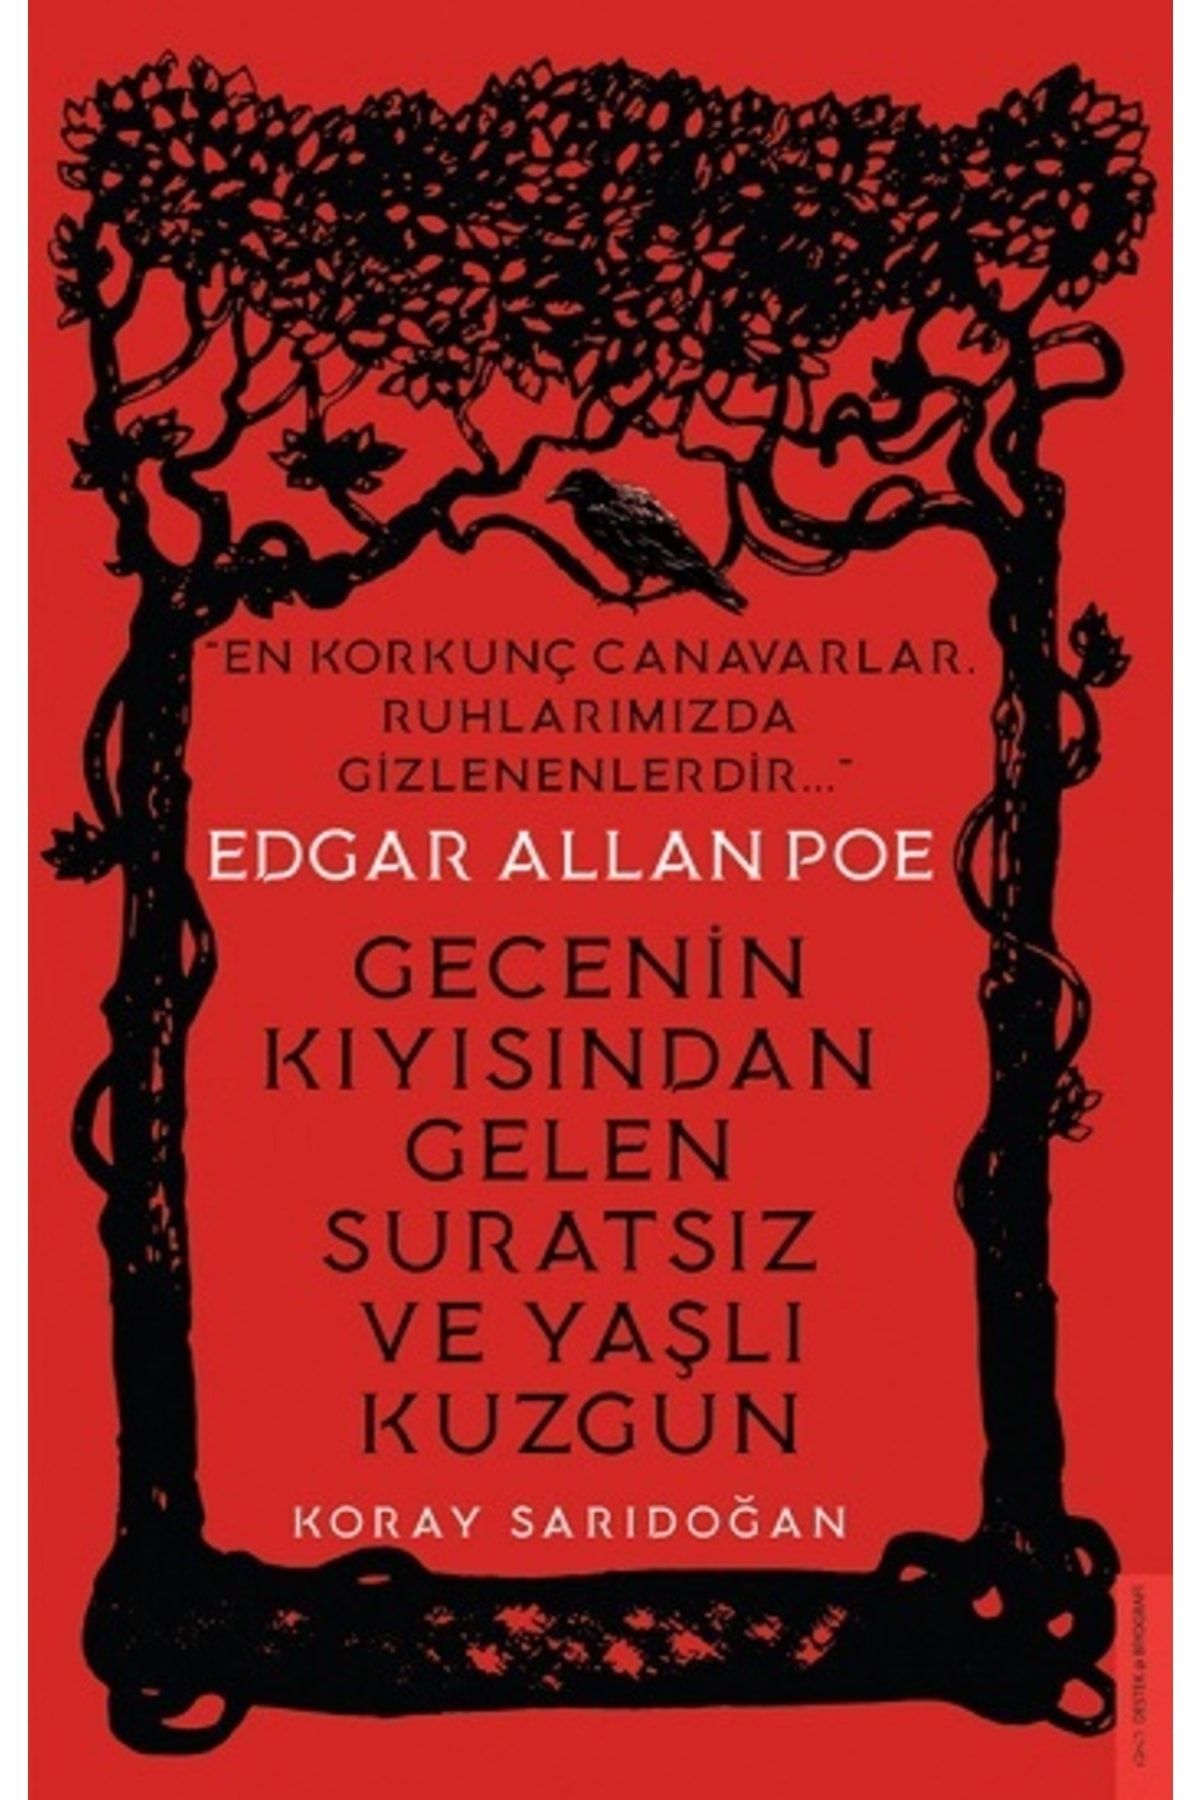 Destek Yayınları Edgar Allan Poe / Gecenin Kıyısından Gelen Suratsız Ve Yaşlı Kuzgun-namaz Tesbihatı Hediyeli